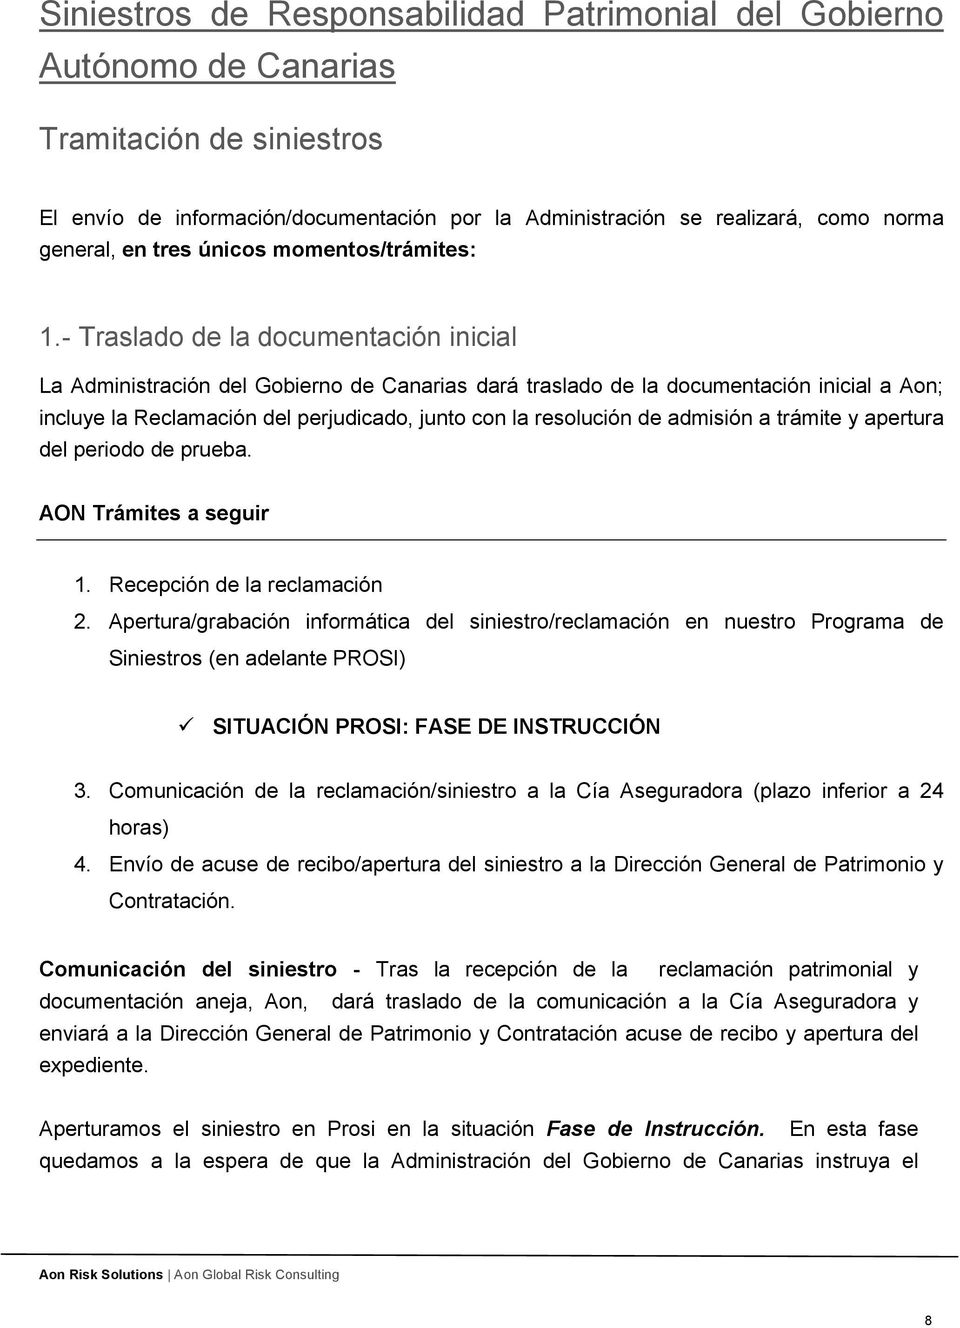 - Traslado de la documentación inicial La Administración del Gobierno de Canarias dará traslado de la documentación inicial a Aon; incluye la Reclamación del perjudicado, junto con la resolución de